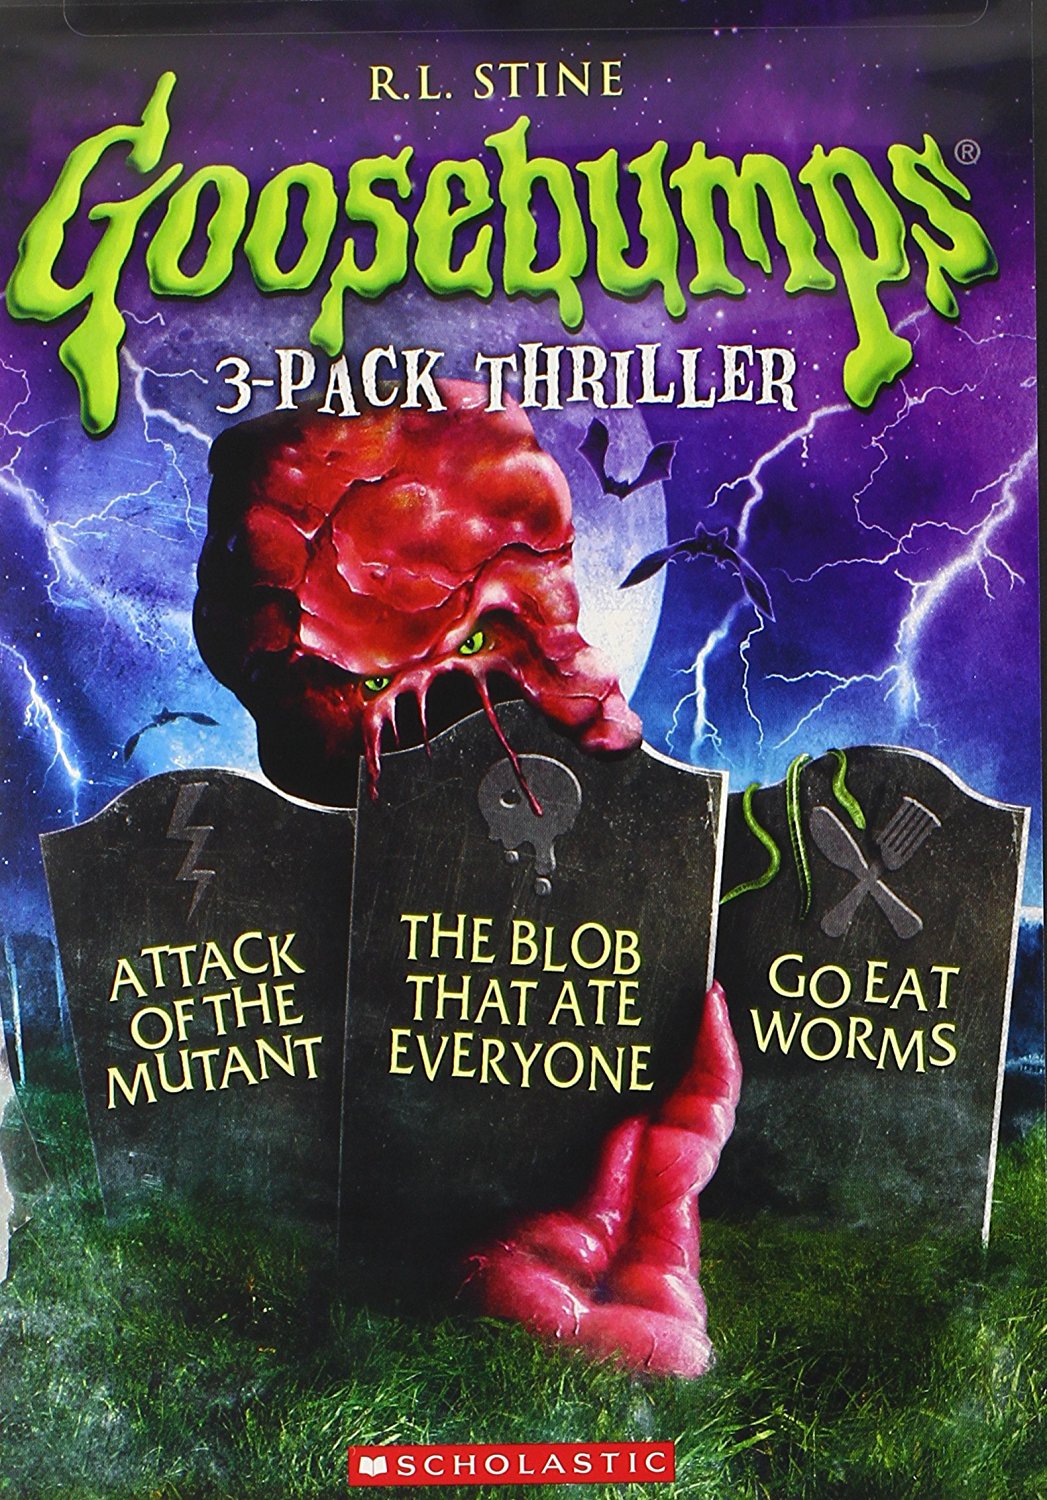 Goosebumps: 3-Pack Thriller